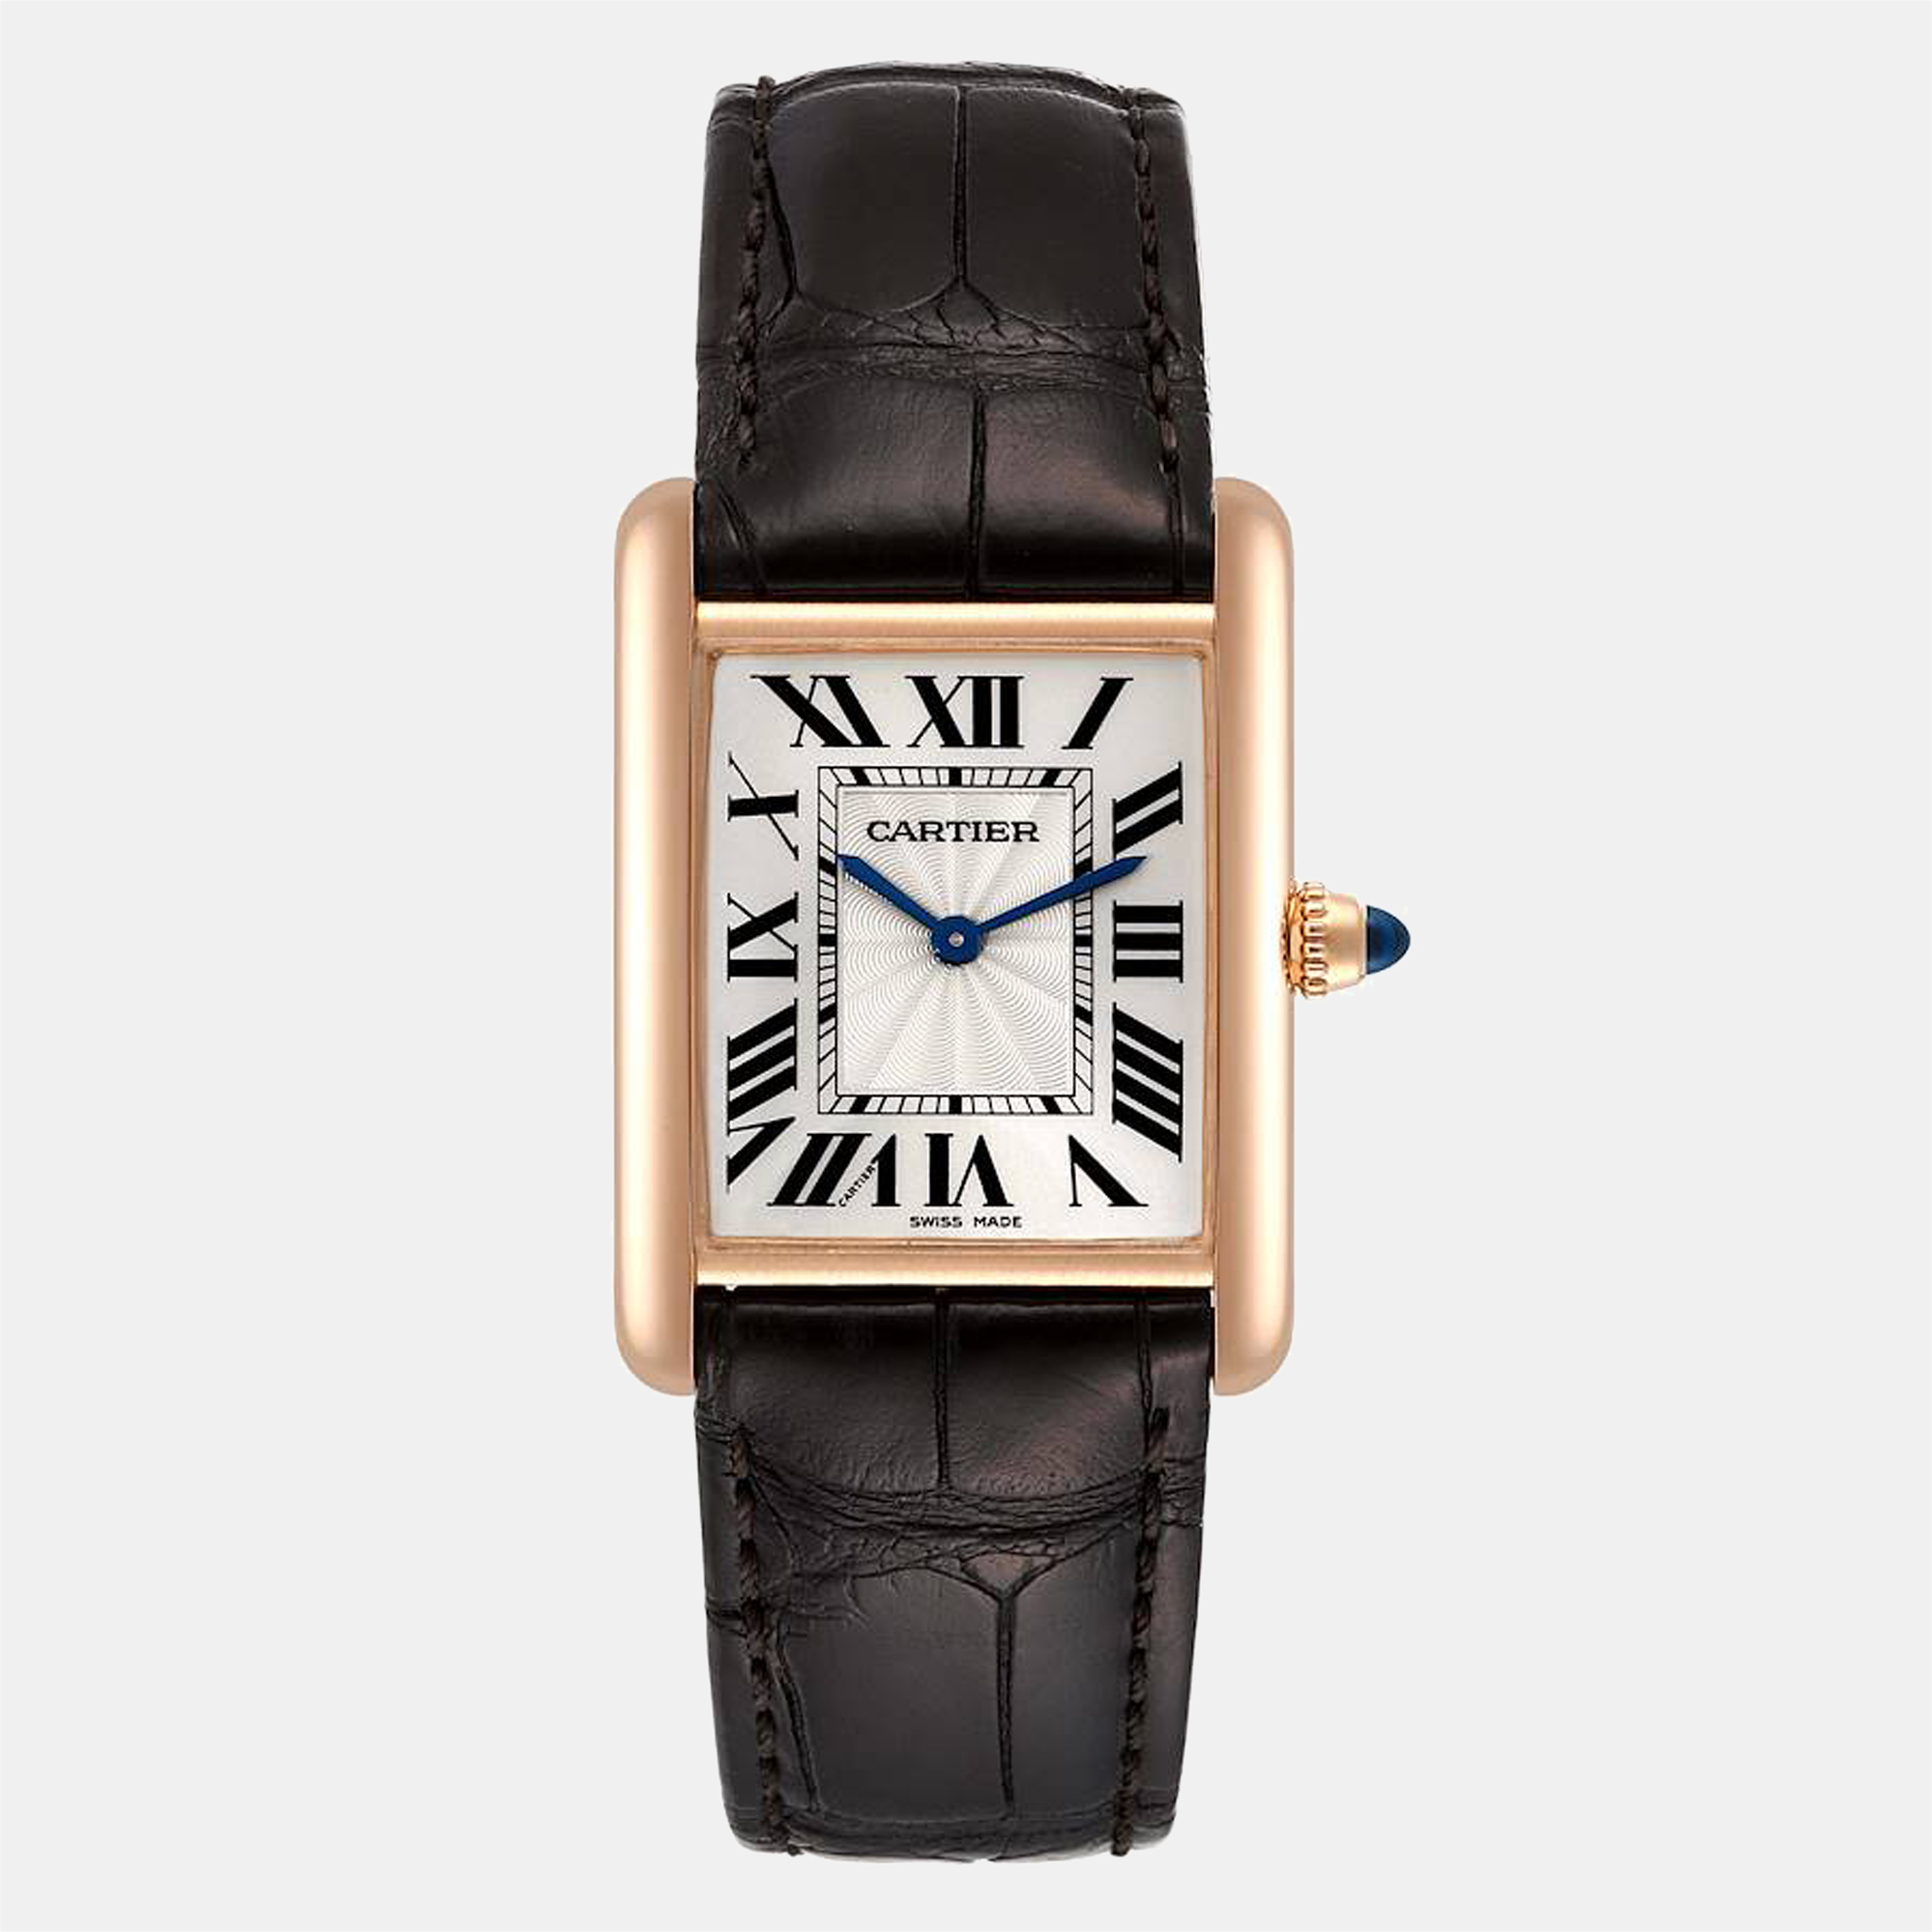 Pre-owned Cartier Silver 18k Rose Gold Tank Louis Wgta0011 Men's Wristwatch 25 Mm